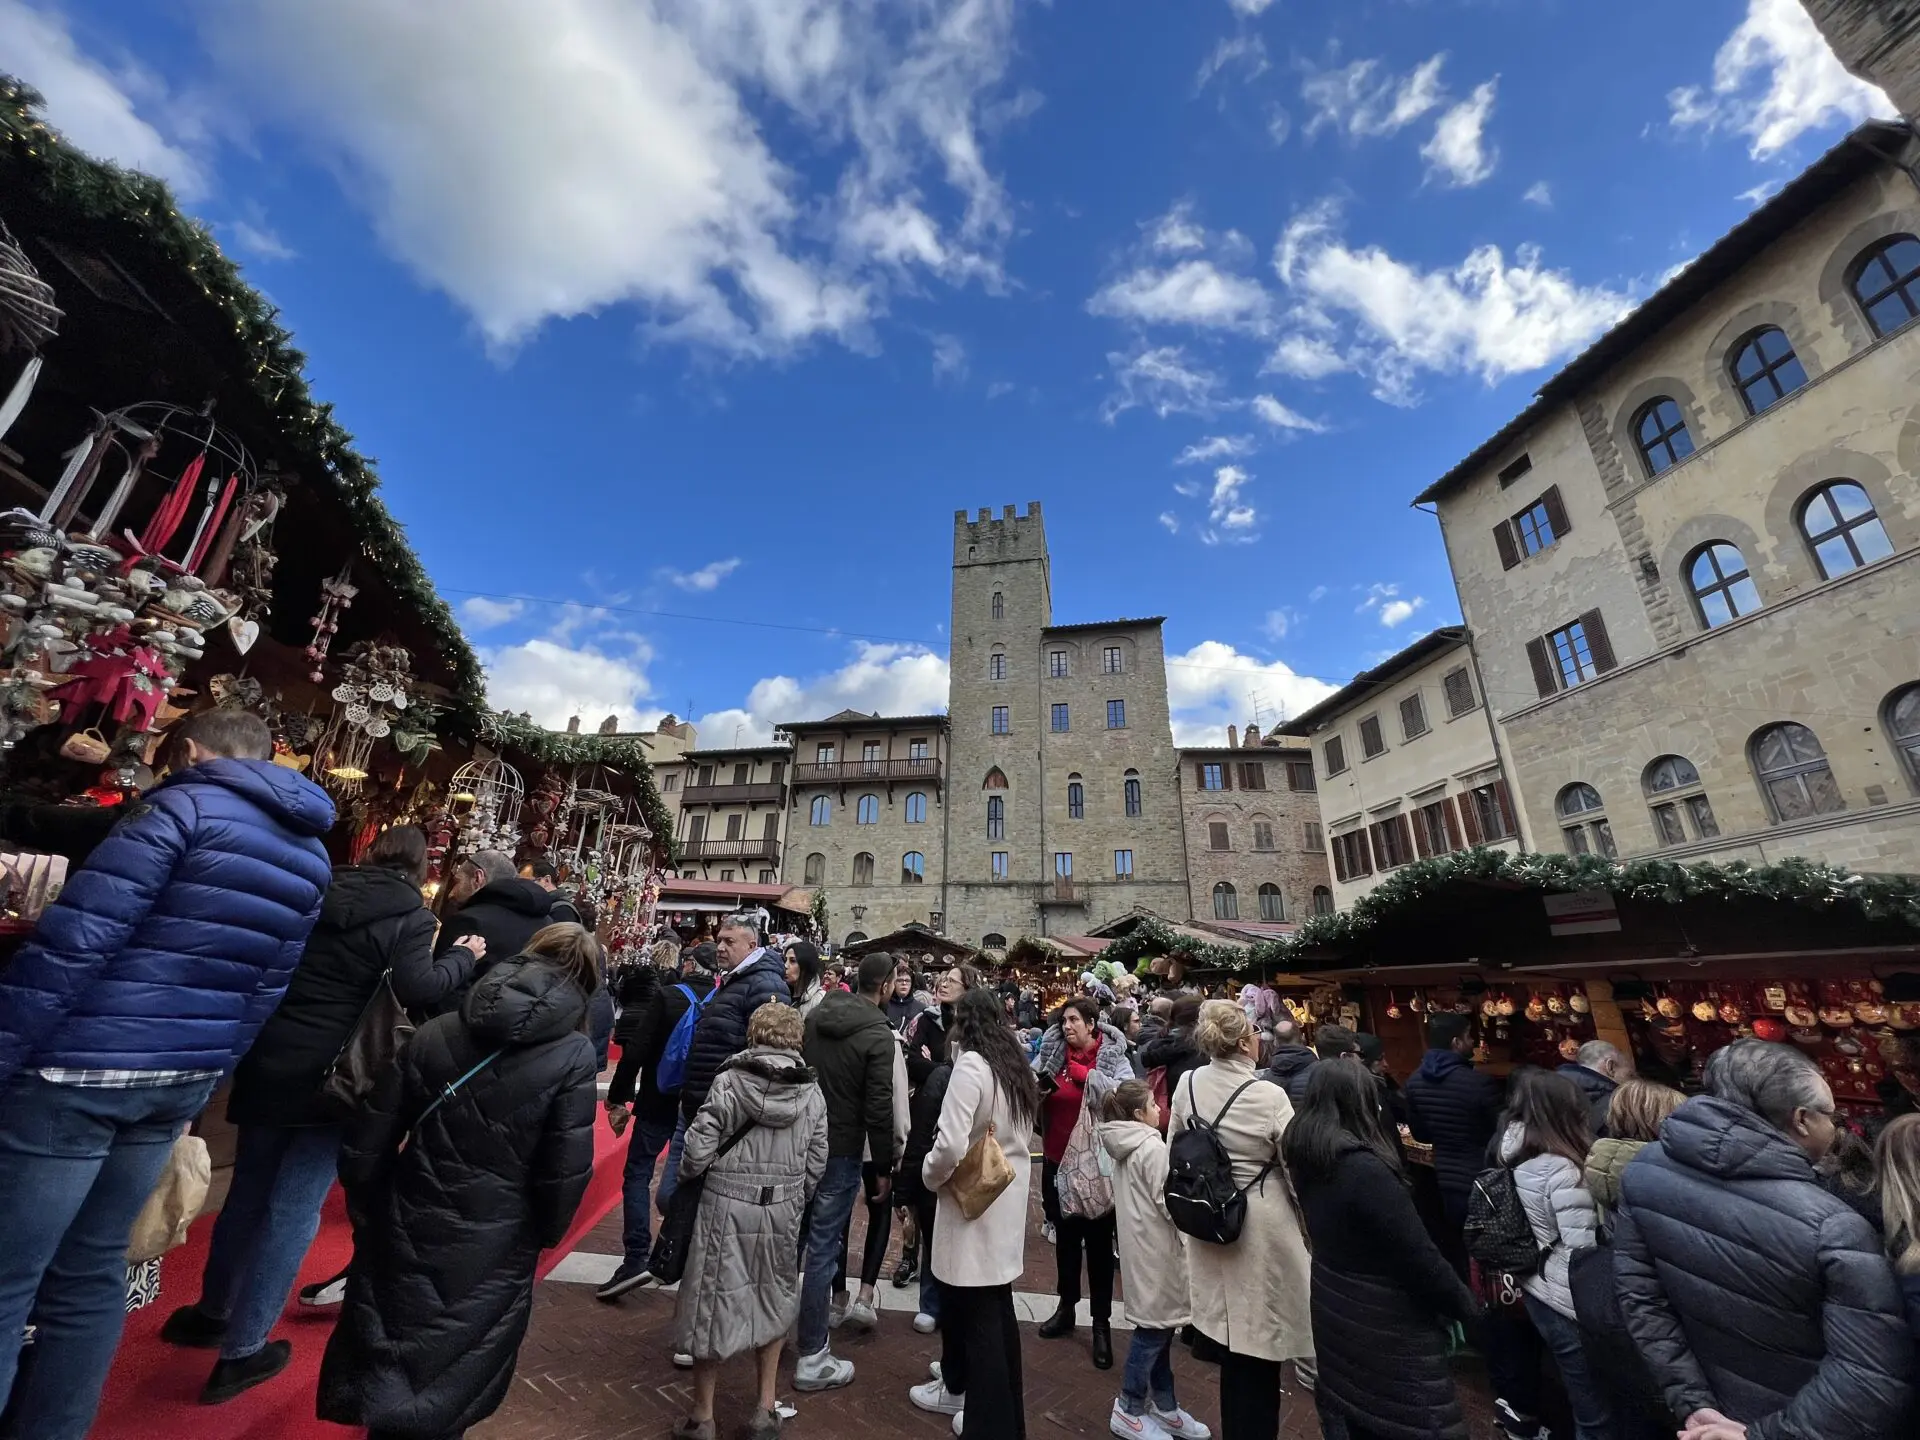 Feriado: Itália realiza eventos online para celebrar Epifania e Befana